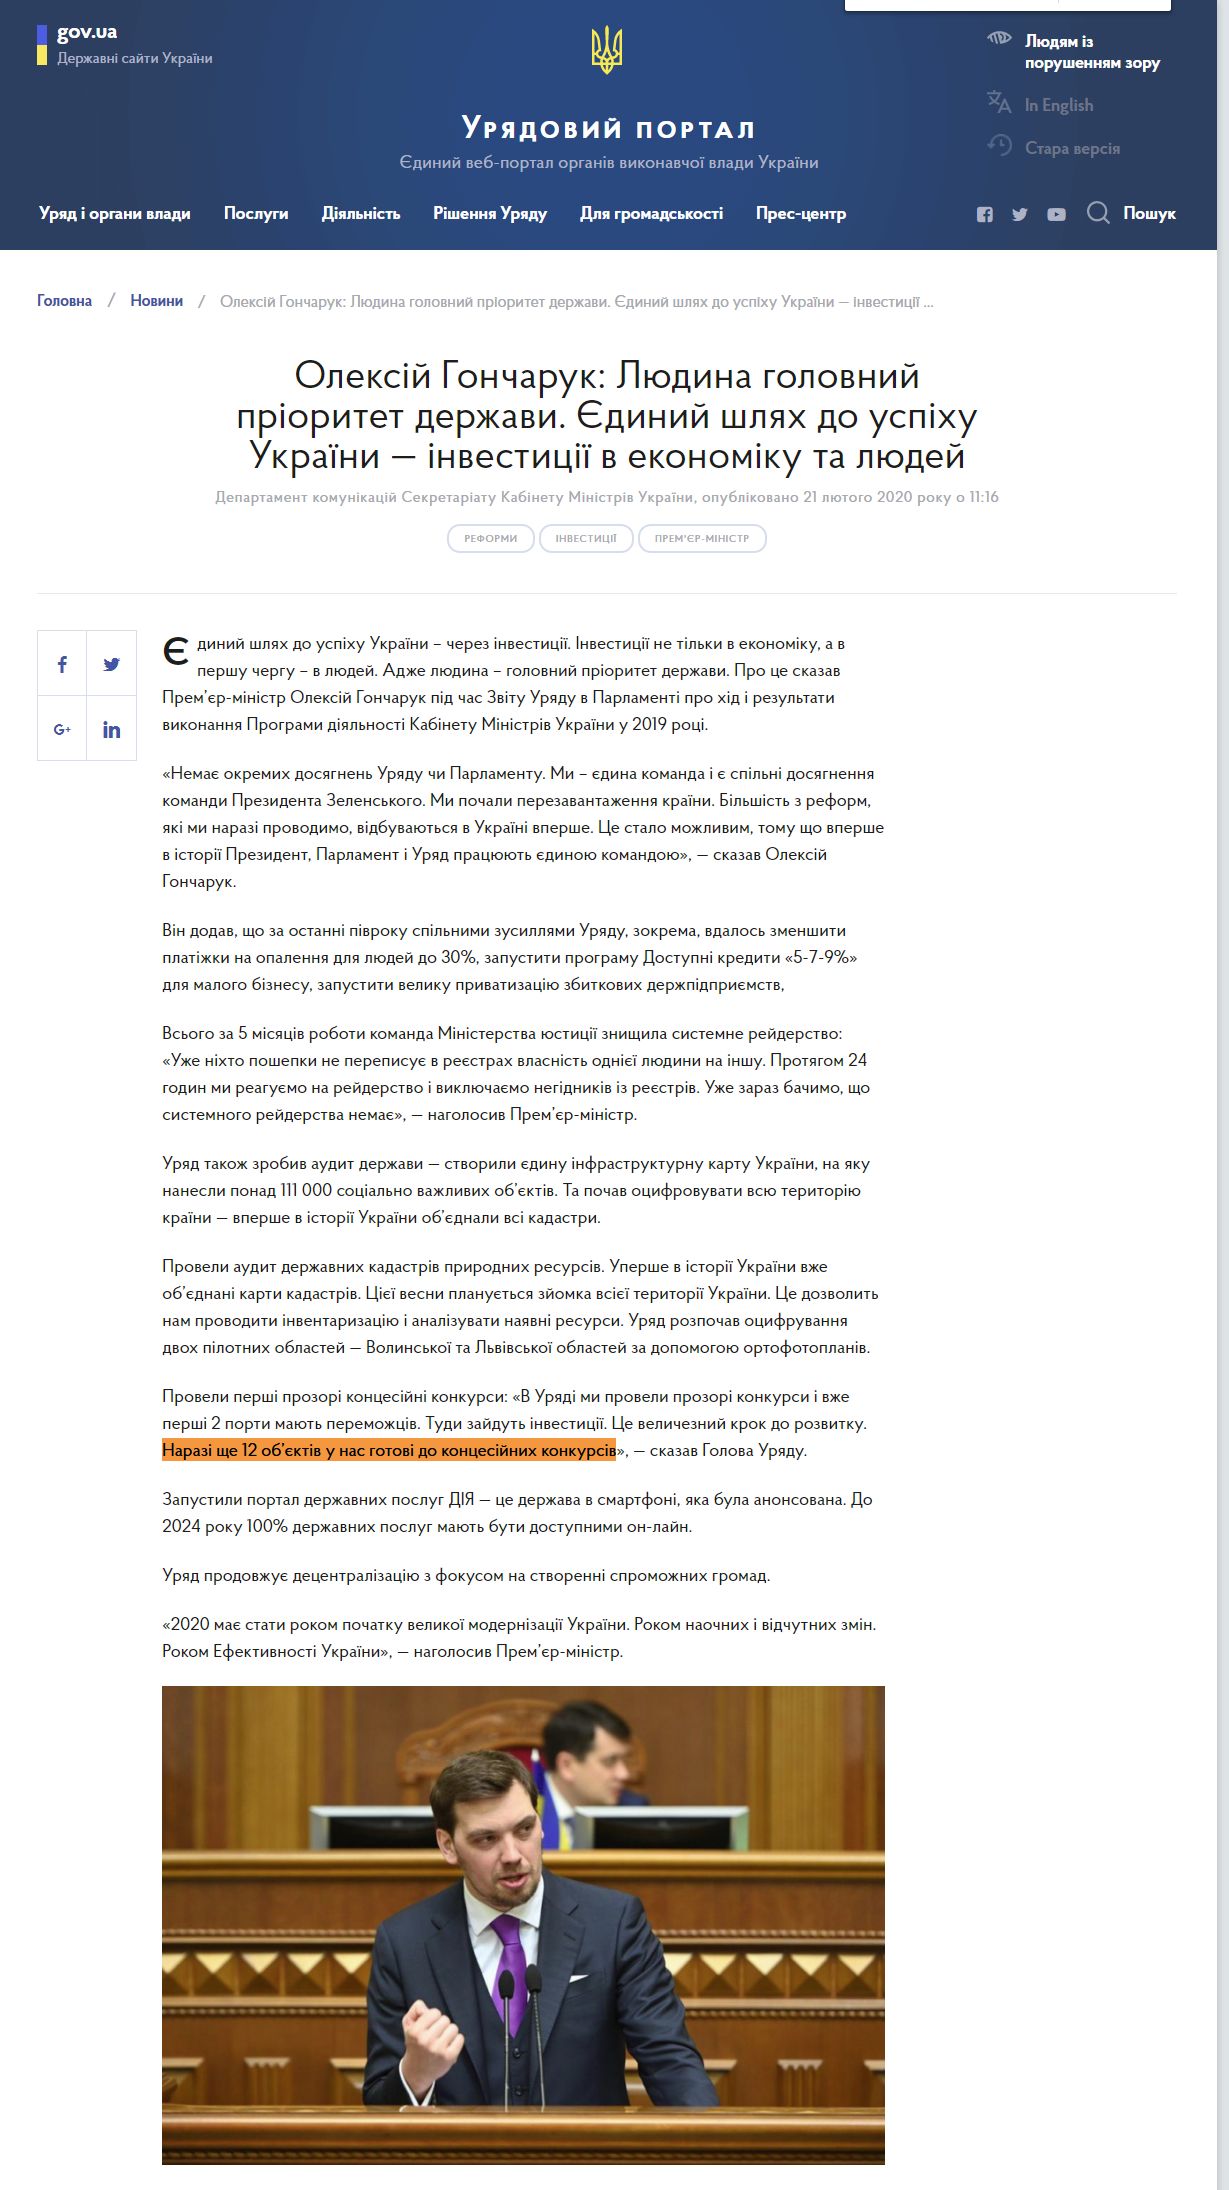 https://www.kmu.gov.ua/news/oleksij-goncharuk-lyudina-golovnij-prioritet-derzhavi-yedinij-shlyah-do-uspihu-ukrayini-investiciyi-v-ekonomiku-ta-lyudej